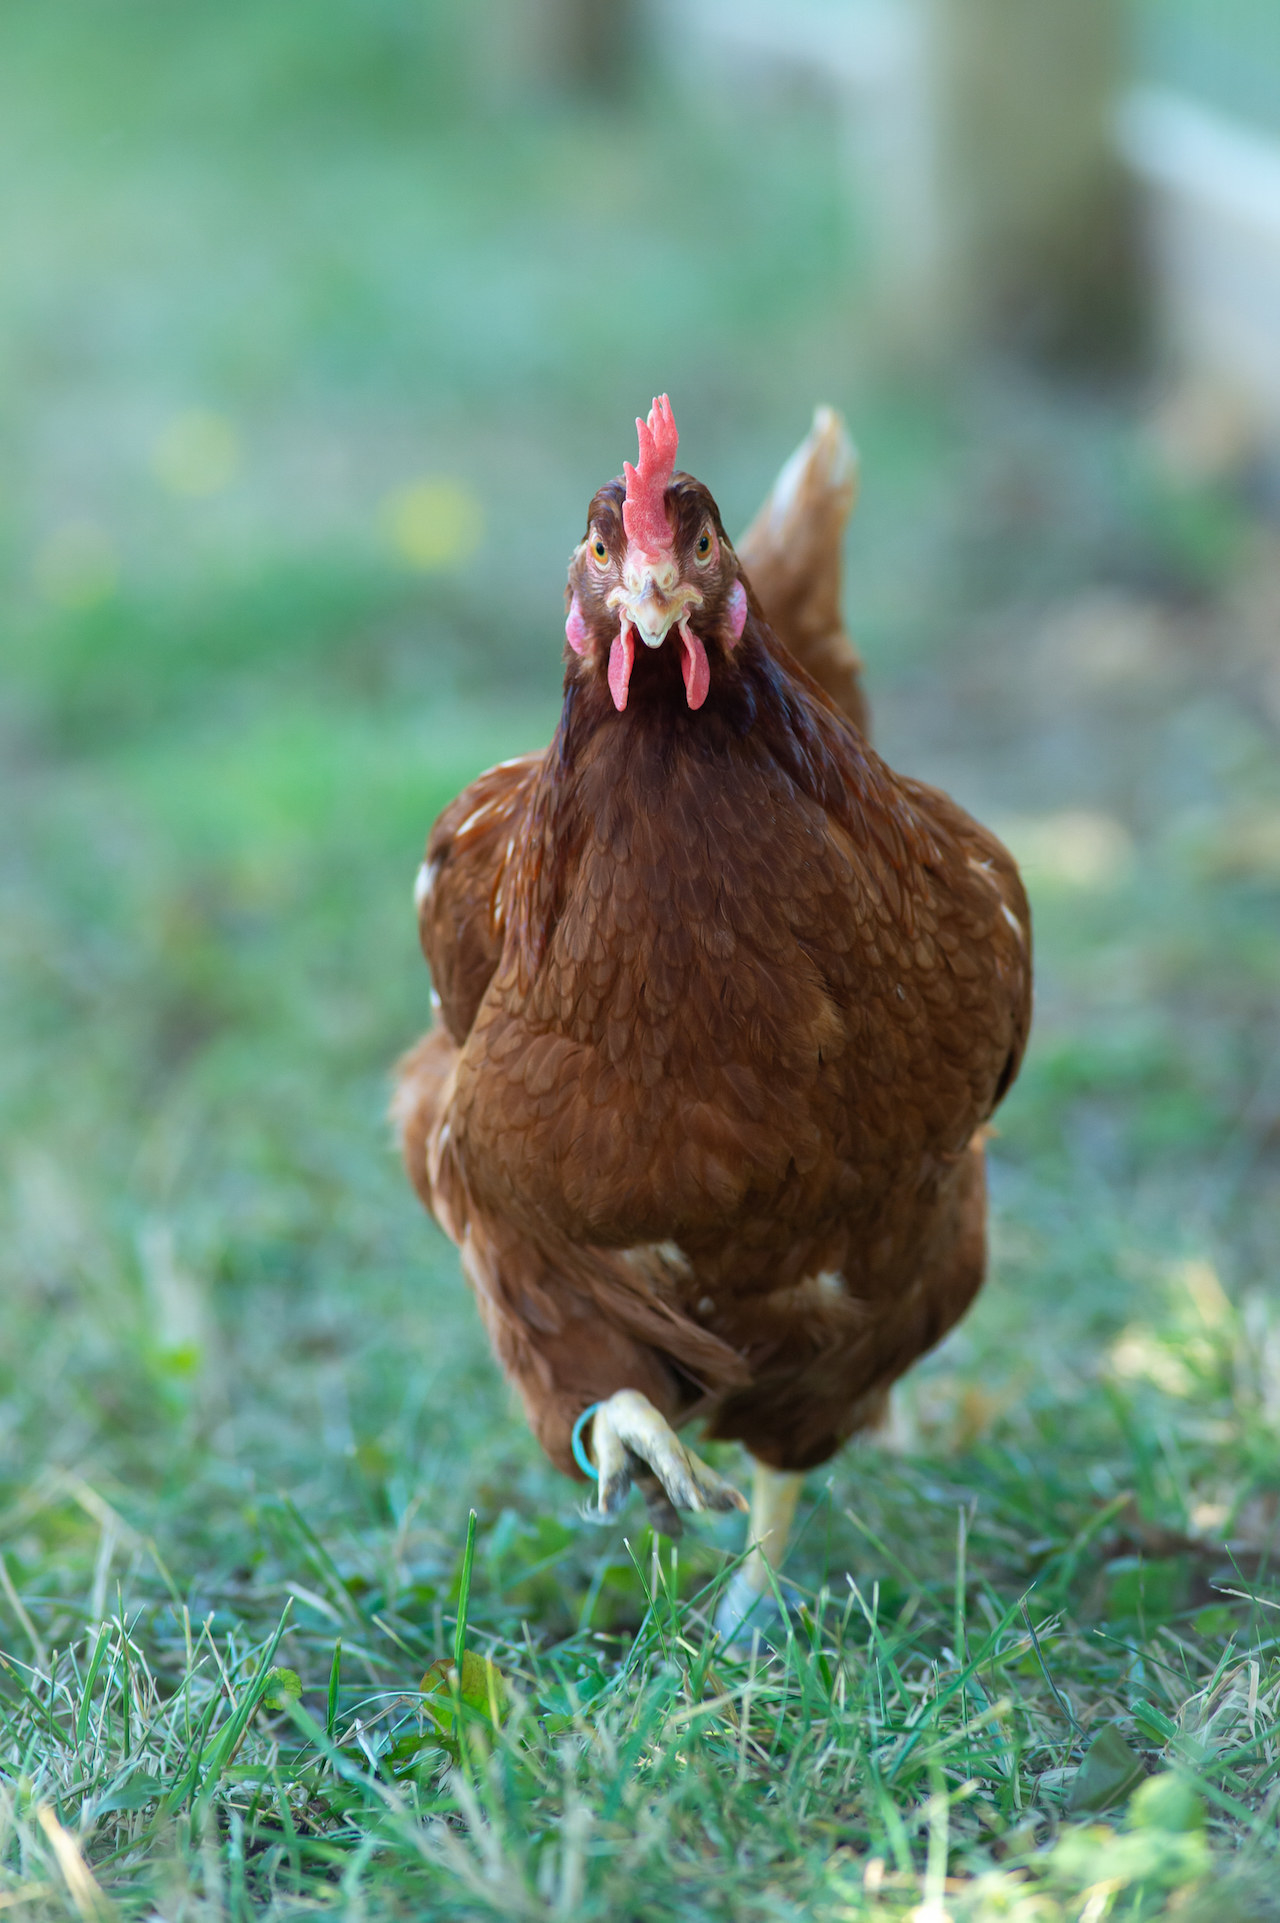 a peckish hen walking in grass